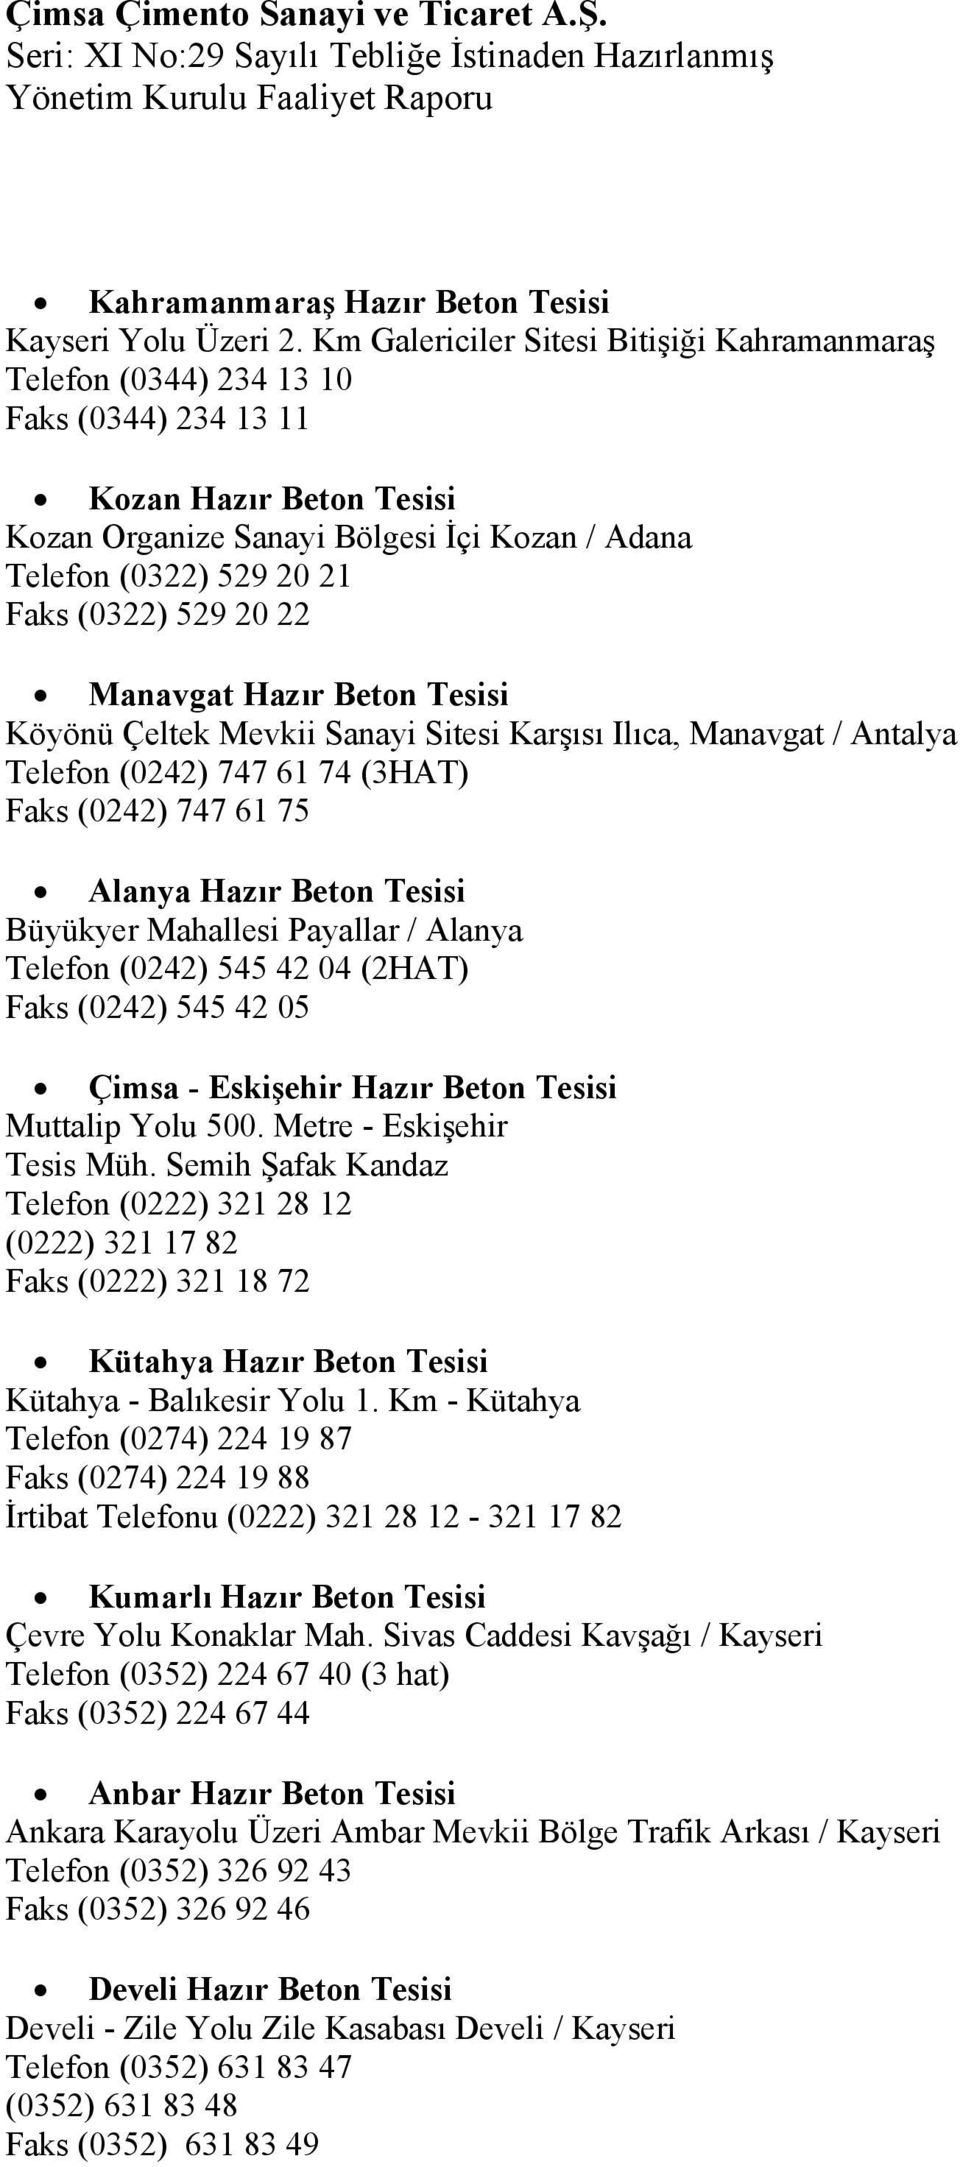 (0322) 529 20 22 Manavgat Hazır Beton Tesisi Köyönü Çeltek Mevkii Sanayi Sitesi Karşısı Ilıca, Manavgat / Antalya Telefon (0242) 747 61 74 (3HAT) Faks (0242) 747 61 75 Alanya Hazır Beton Tesisi